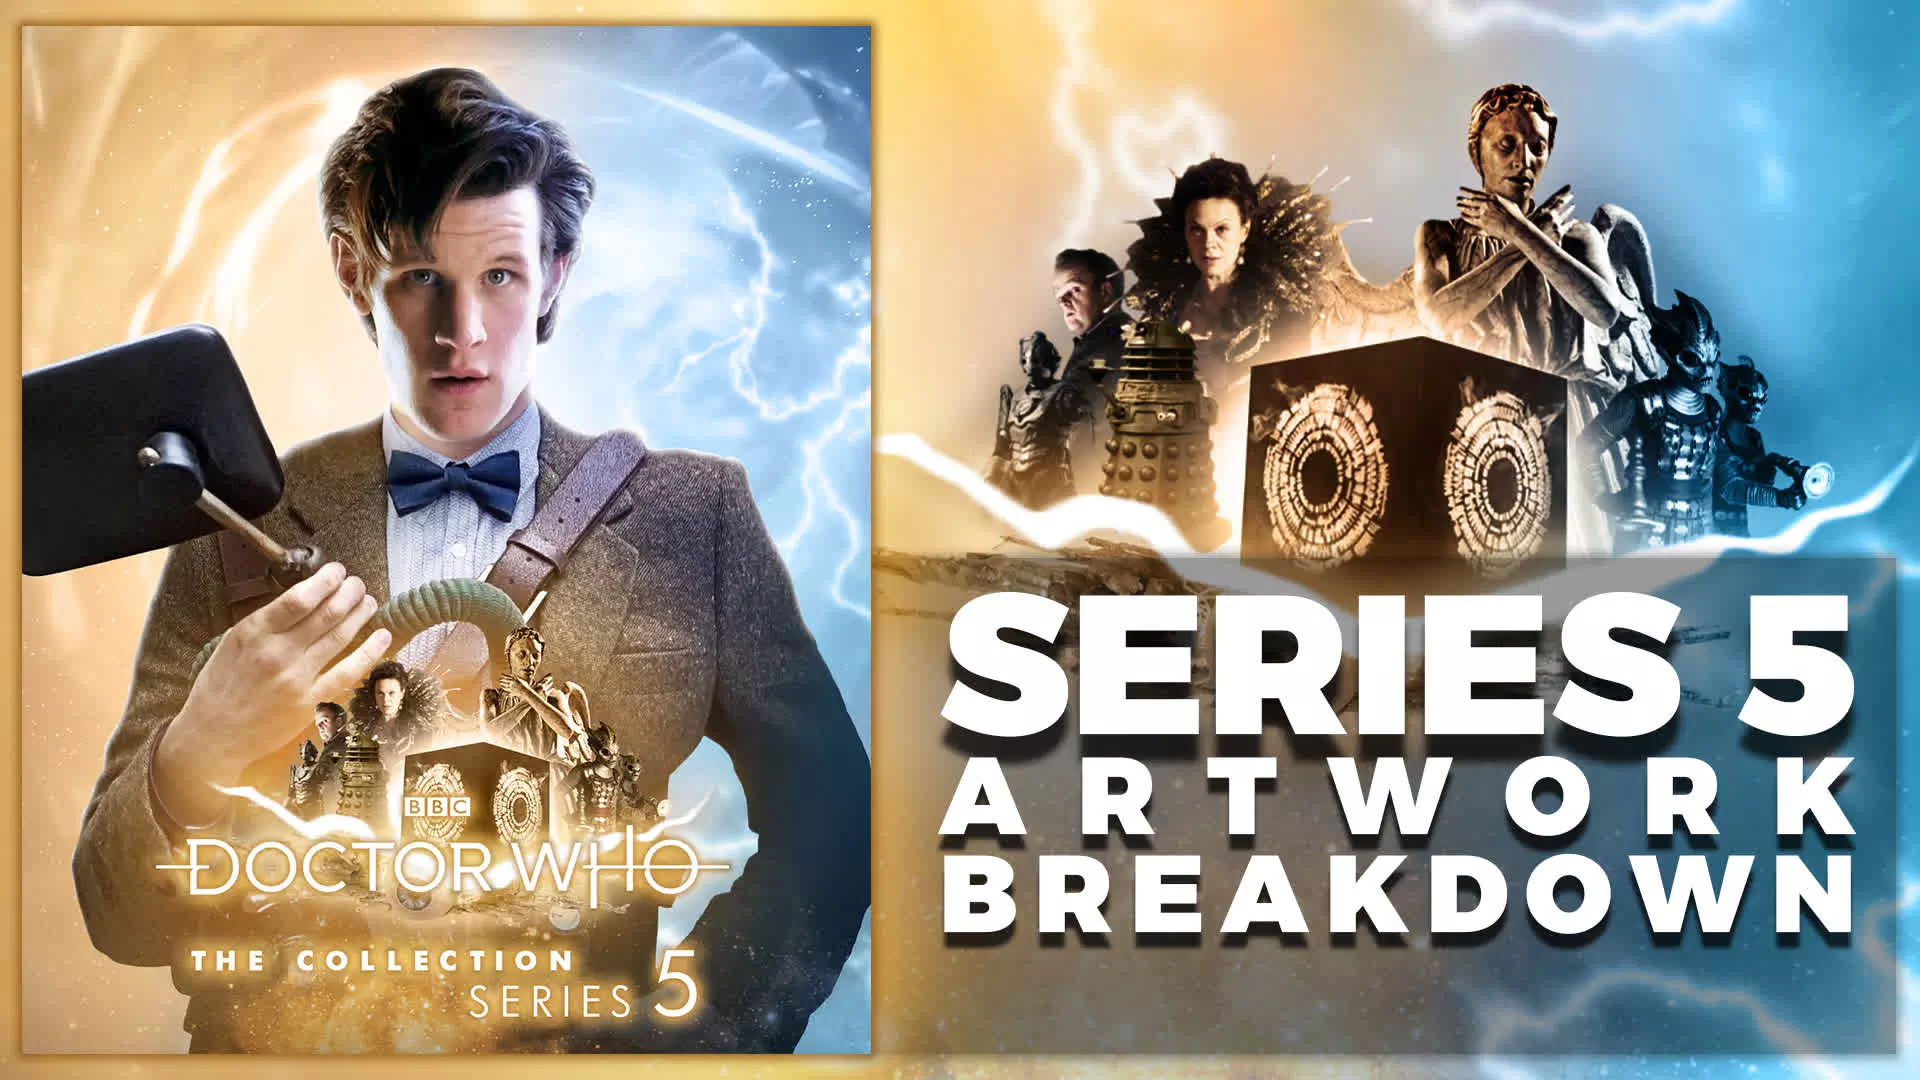 Doctor Who: Series 5 - Artwork Breakdown